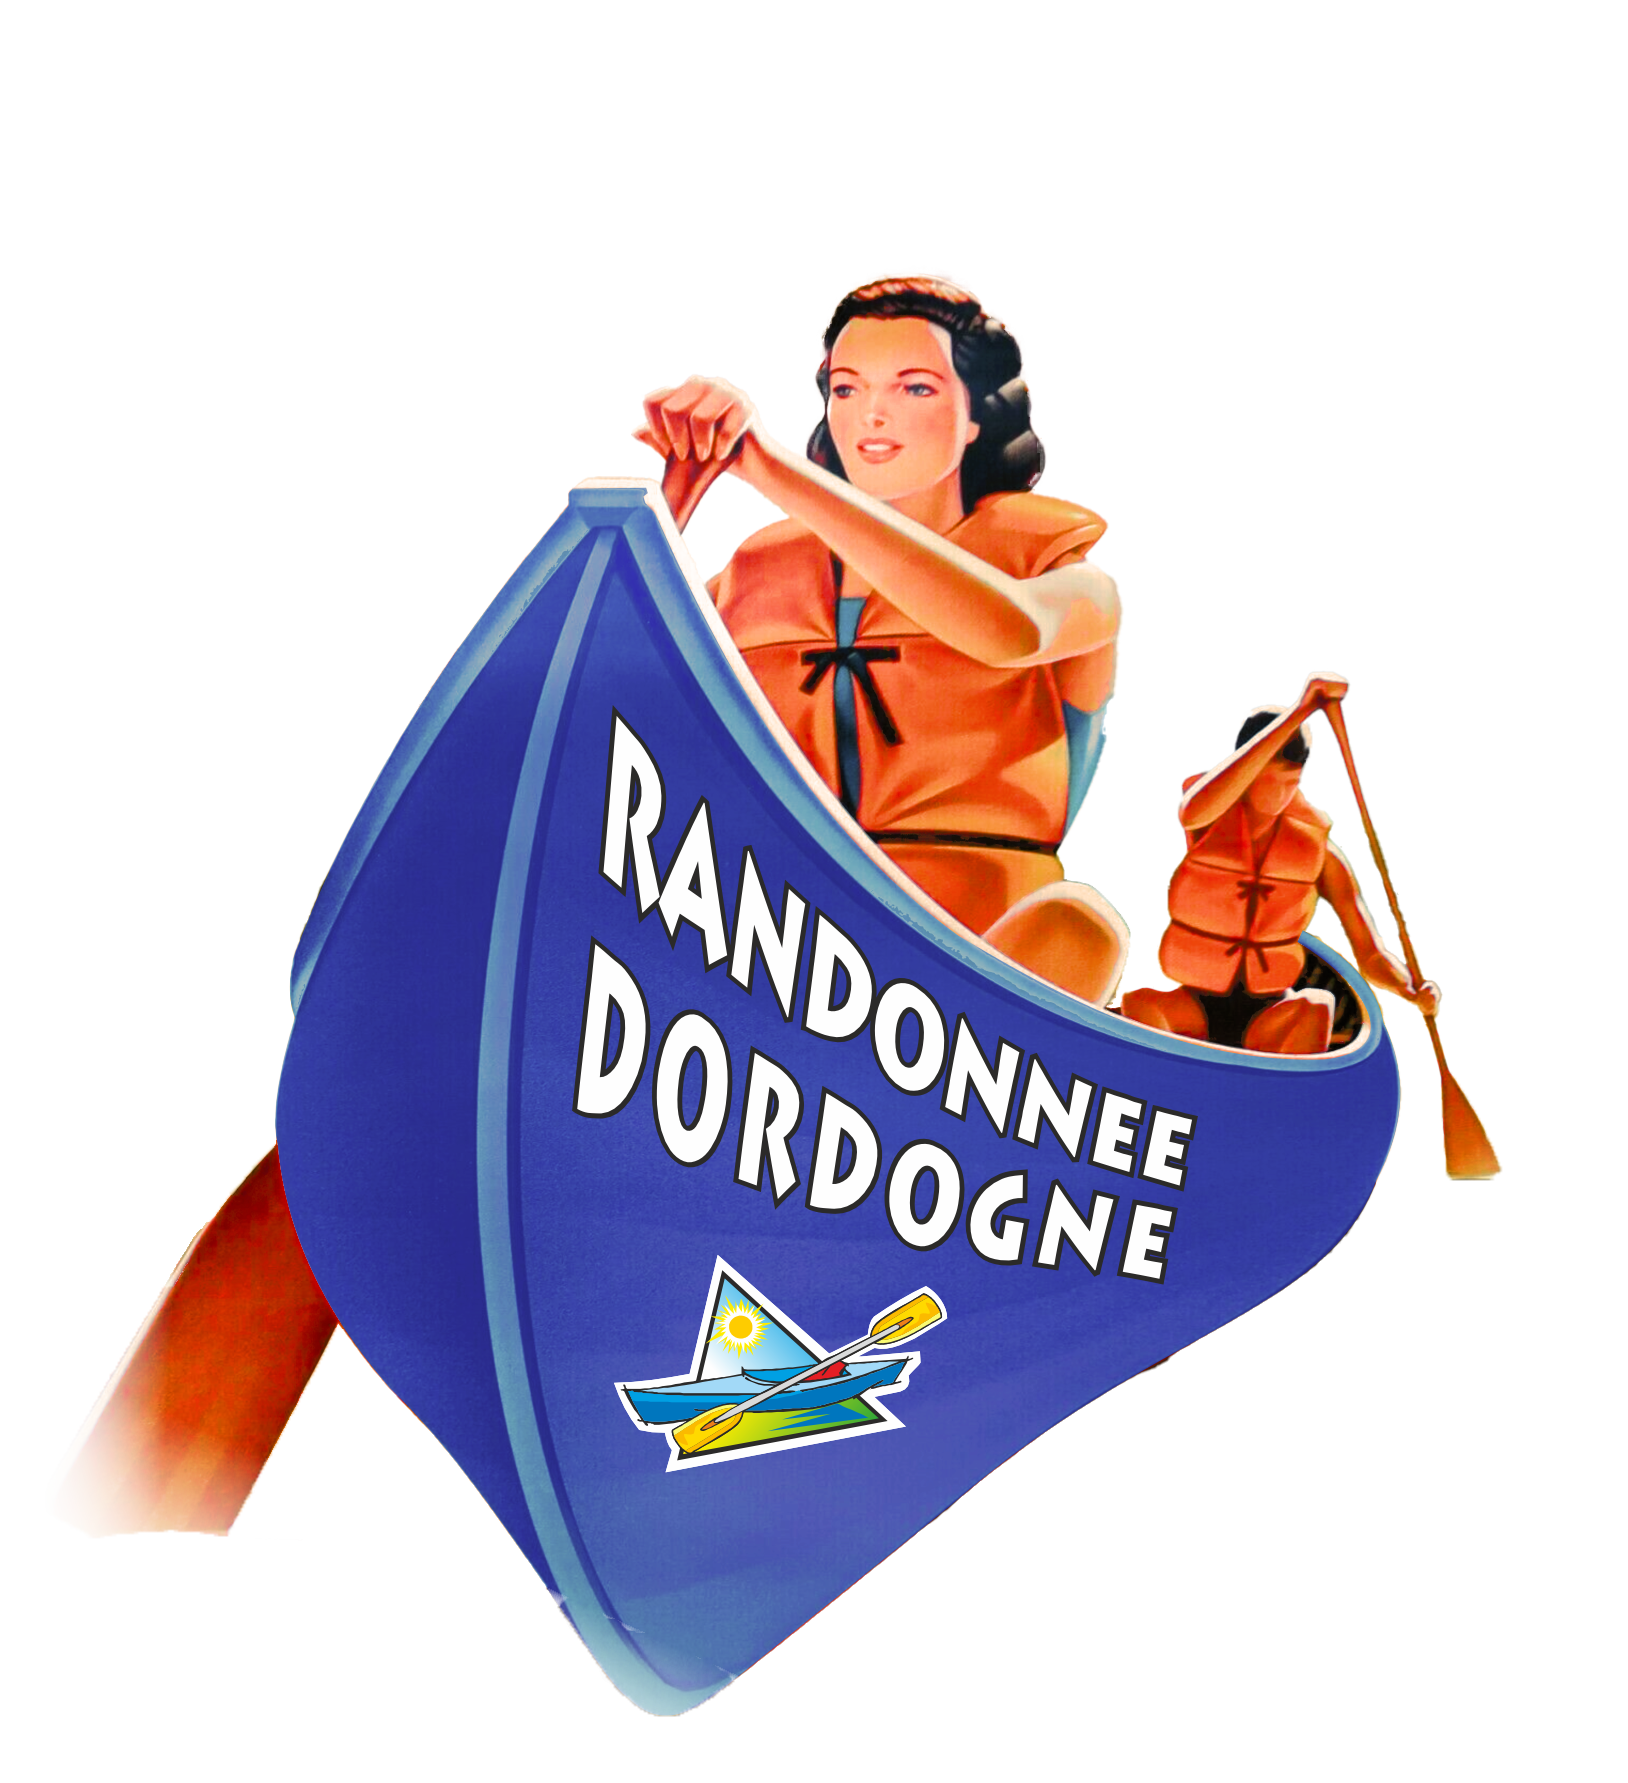 Canoë Rando Dordogne - Location canoë kayak sur la Dordogne